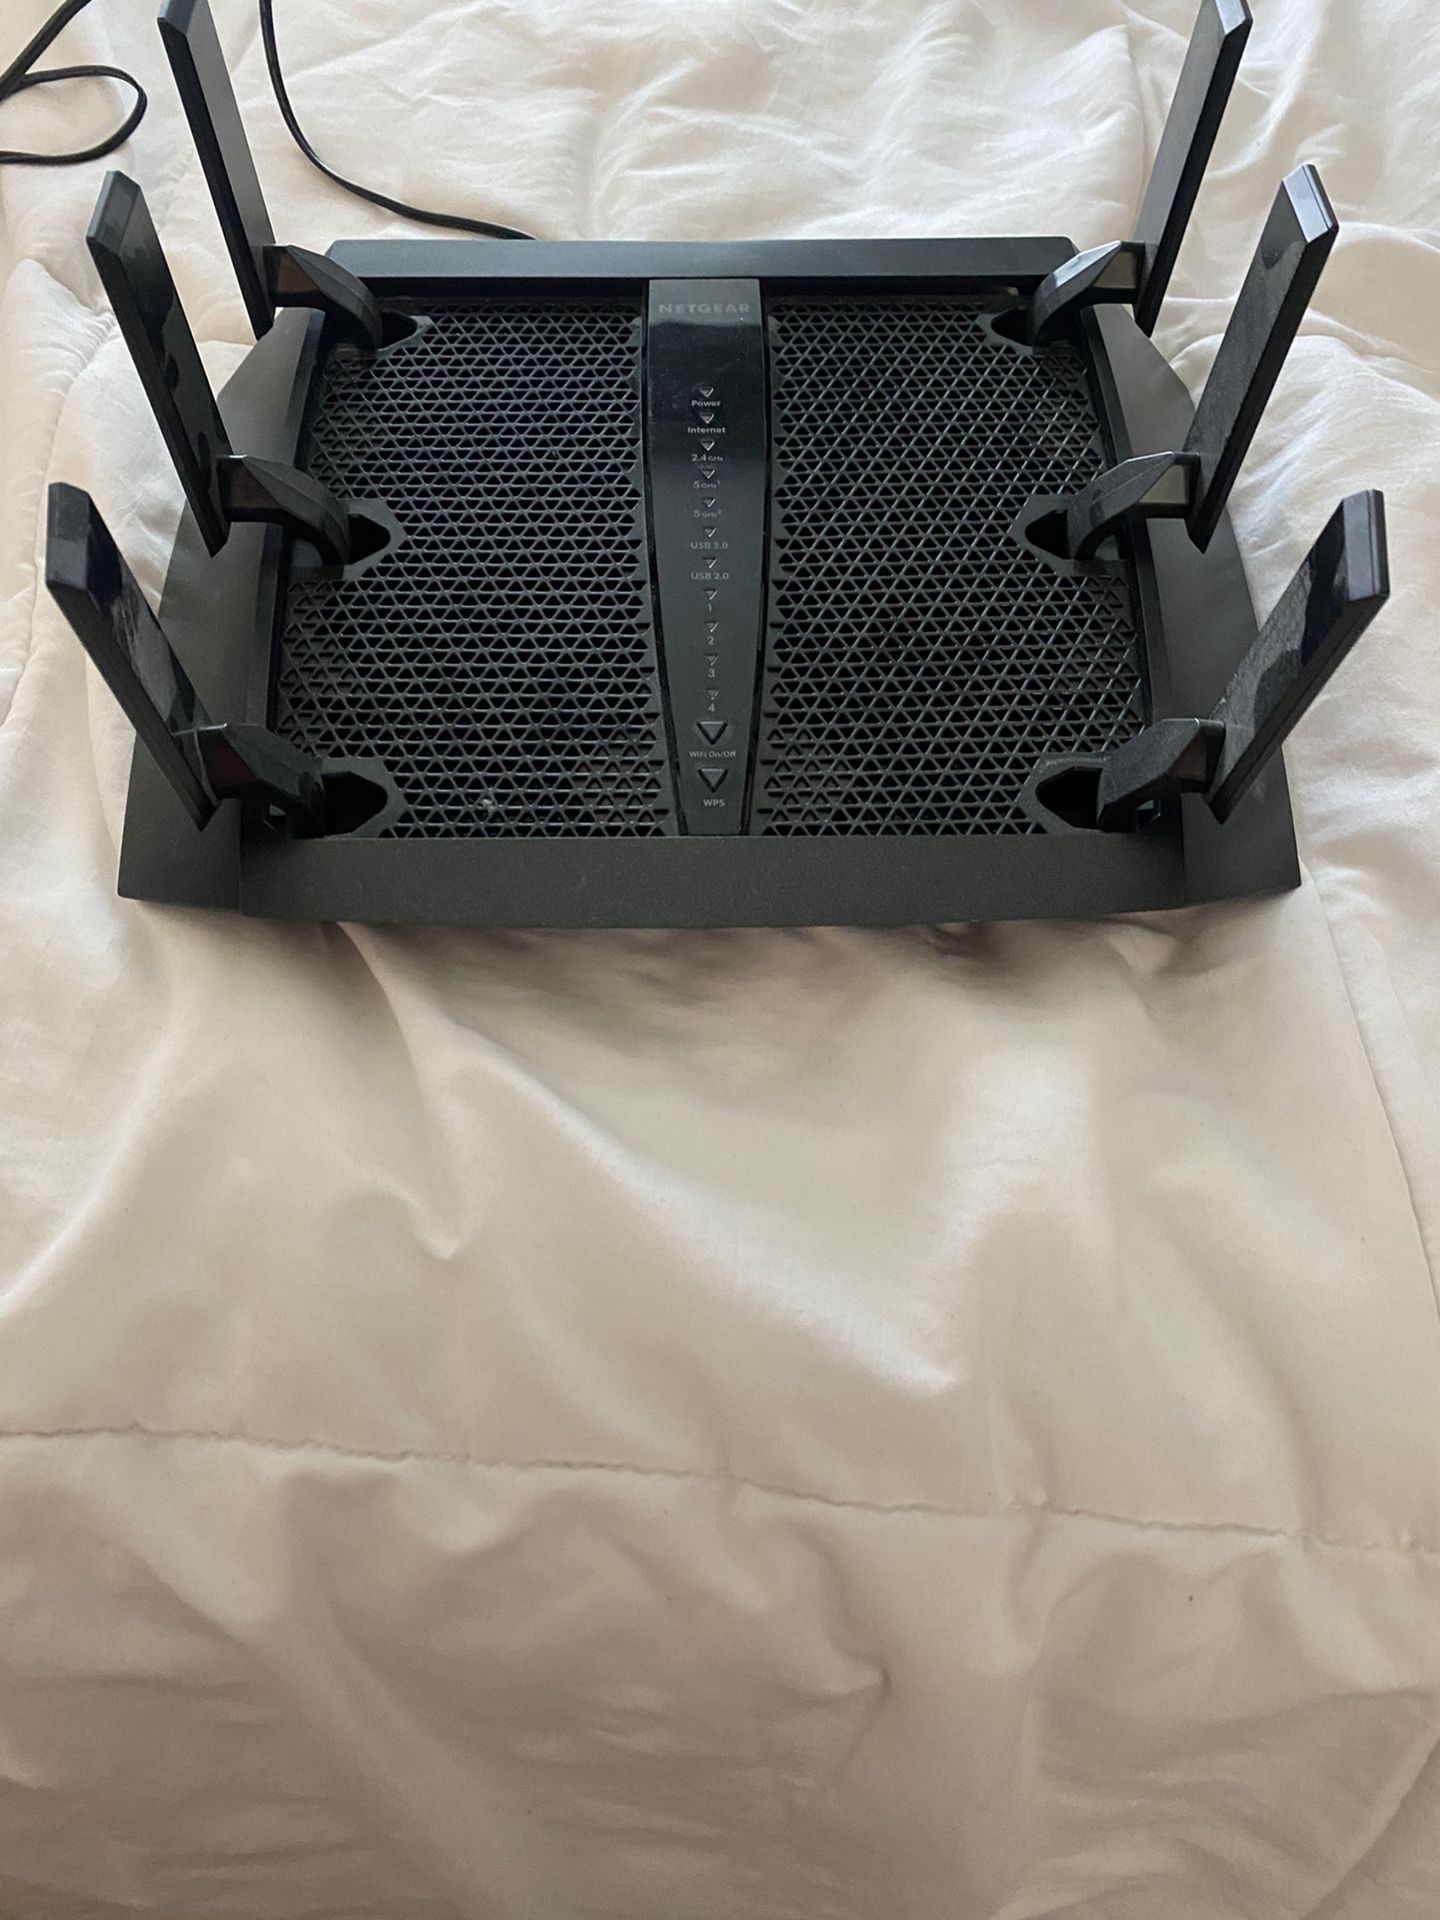 Netgear nighthawk X6 router